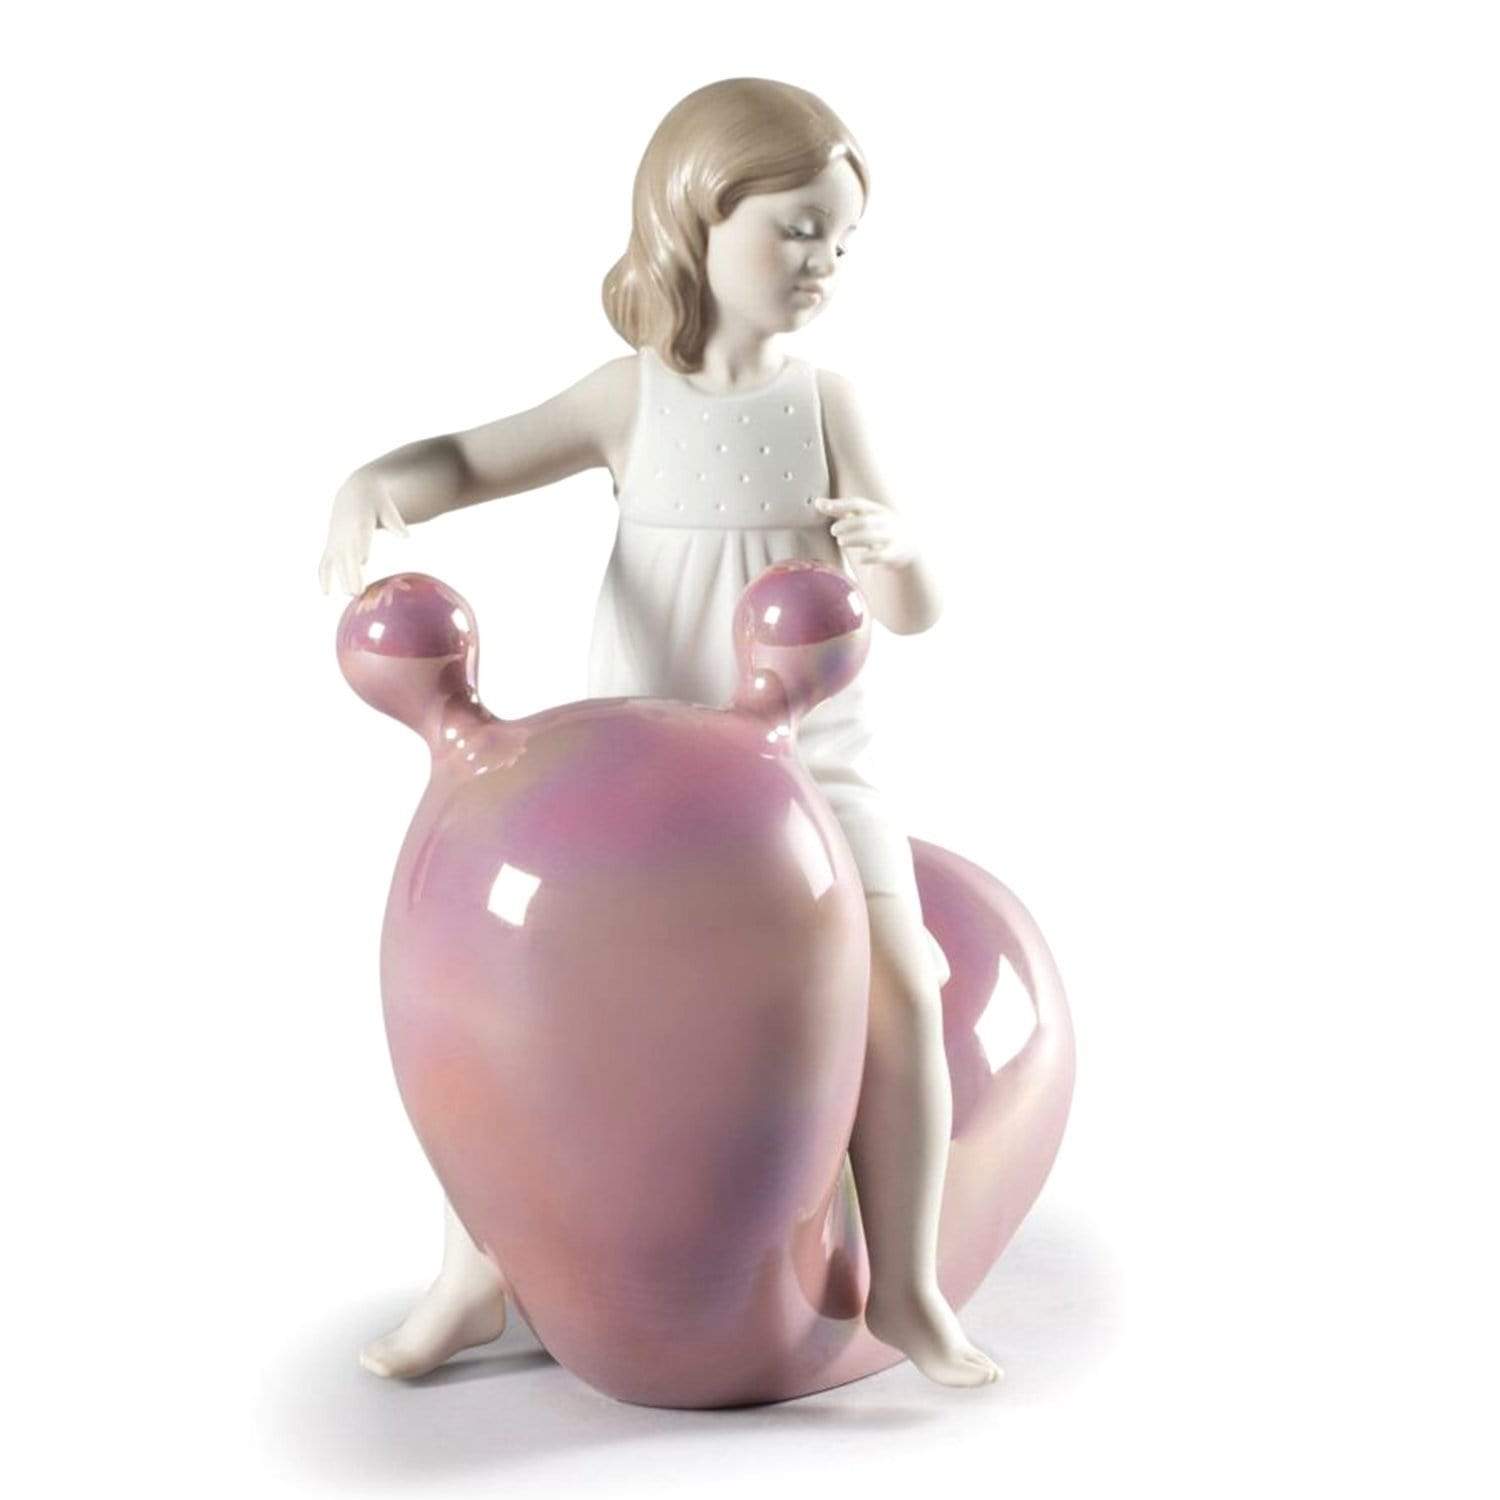 Lladro بلدي سيساو بالون فتاة التمثال - الوردي والأبيض - 1009367 - Jashanmal الرئيسية